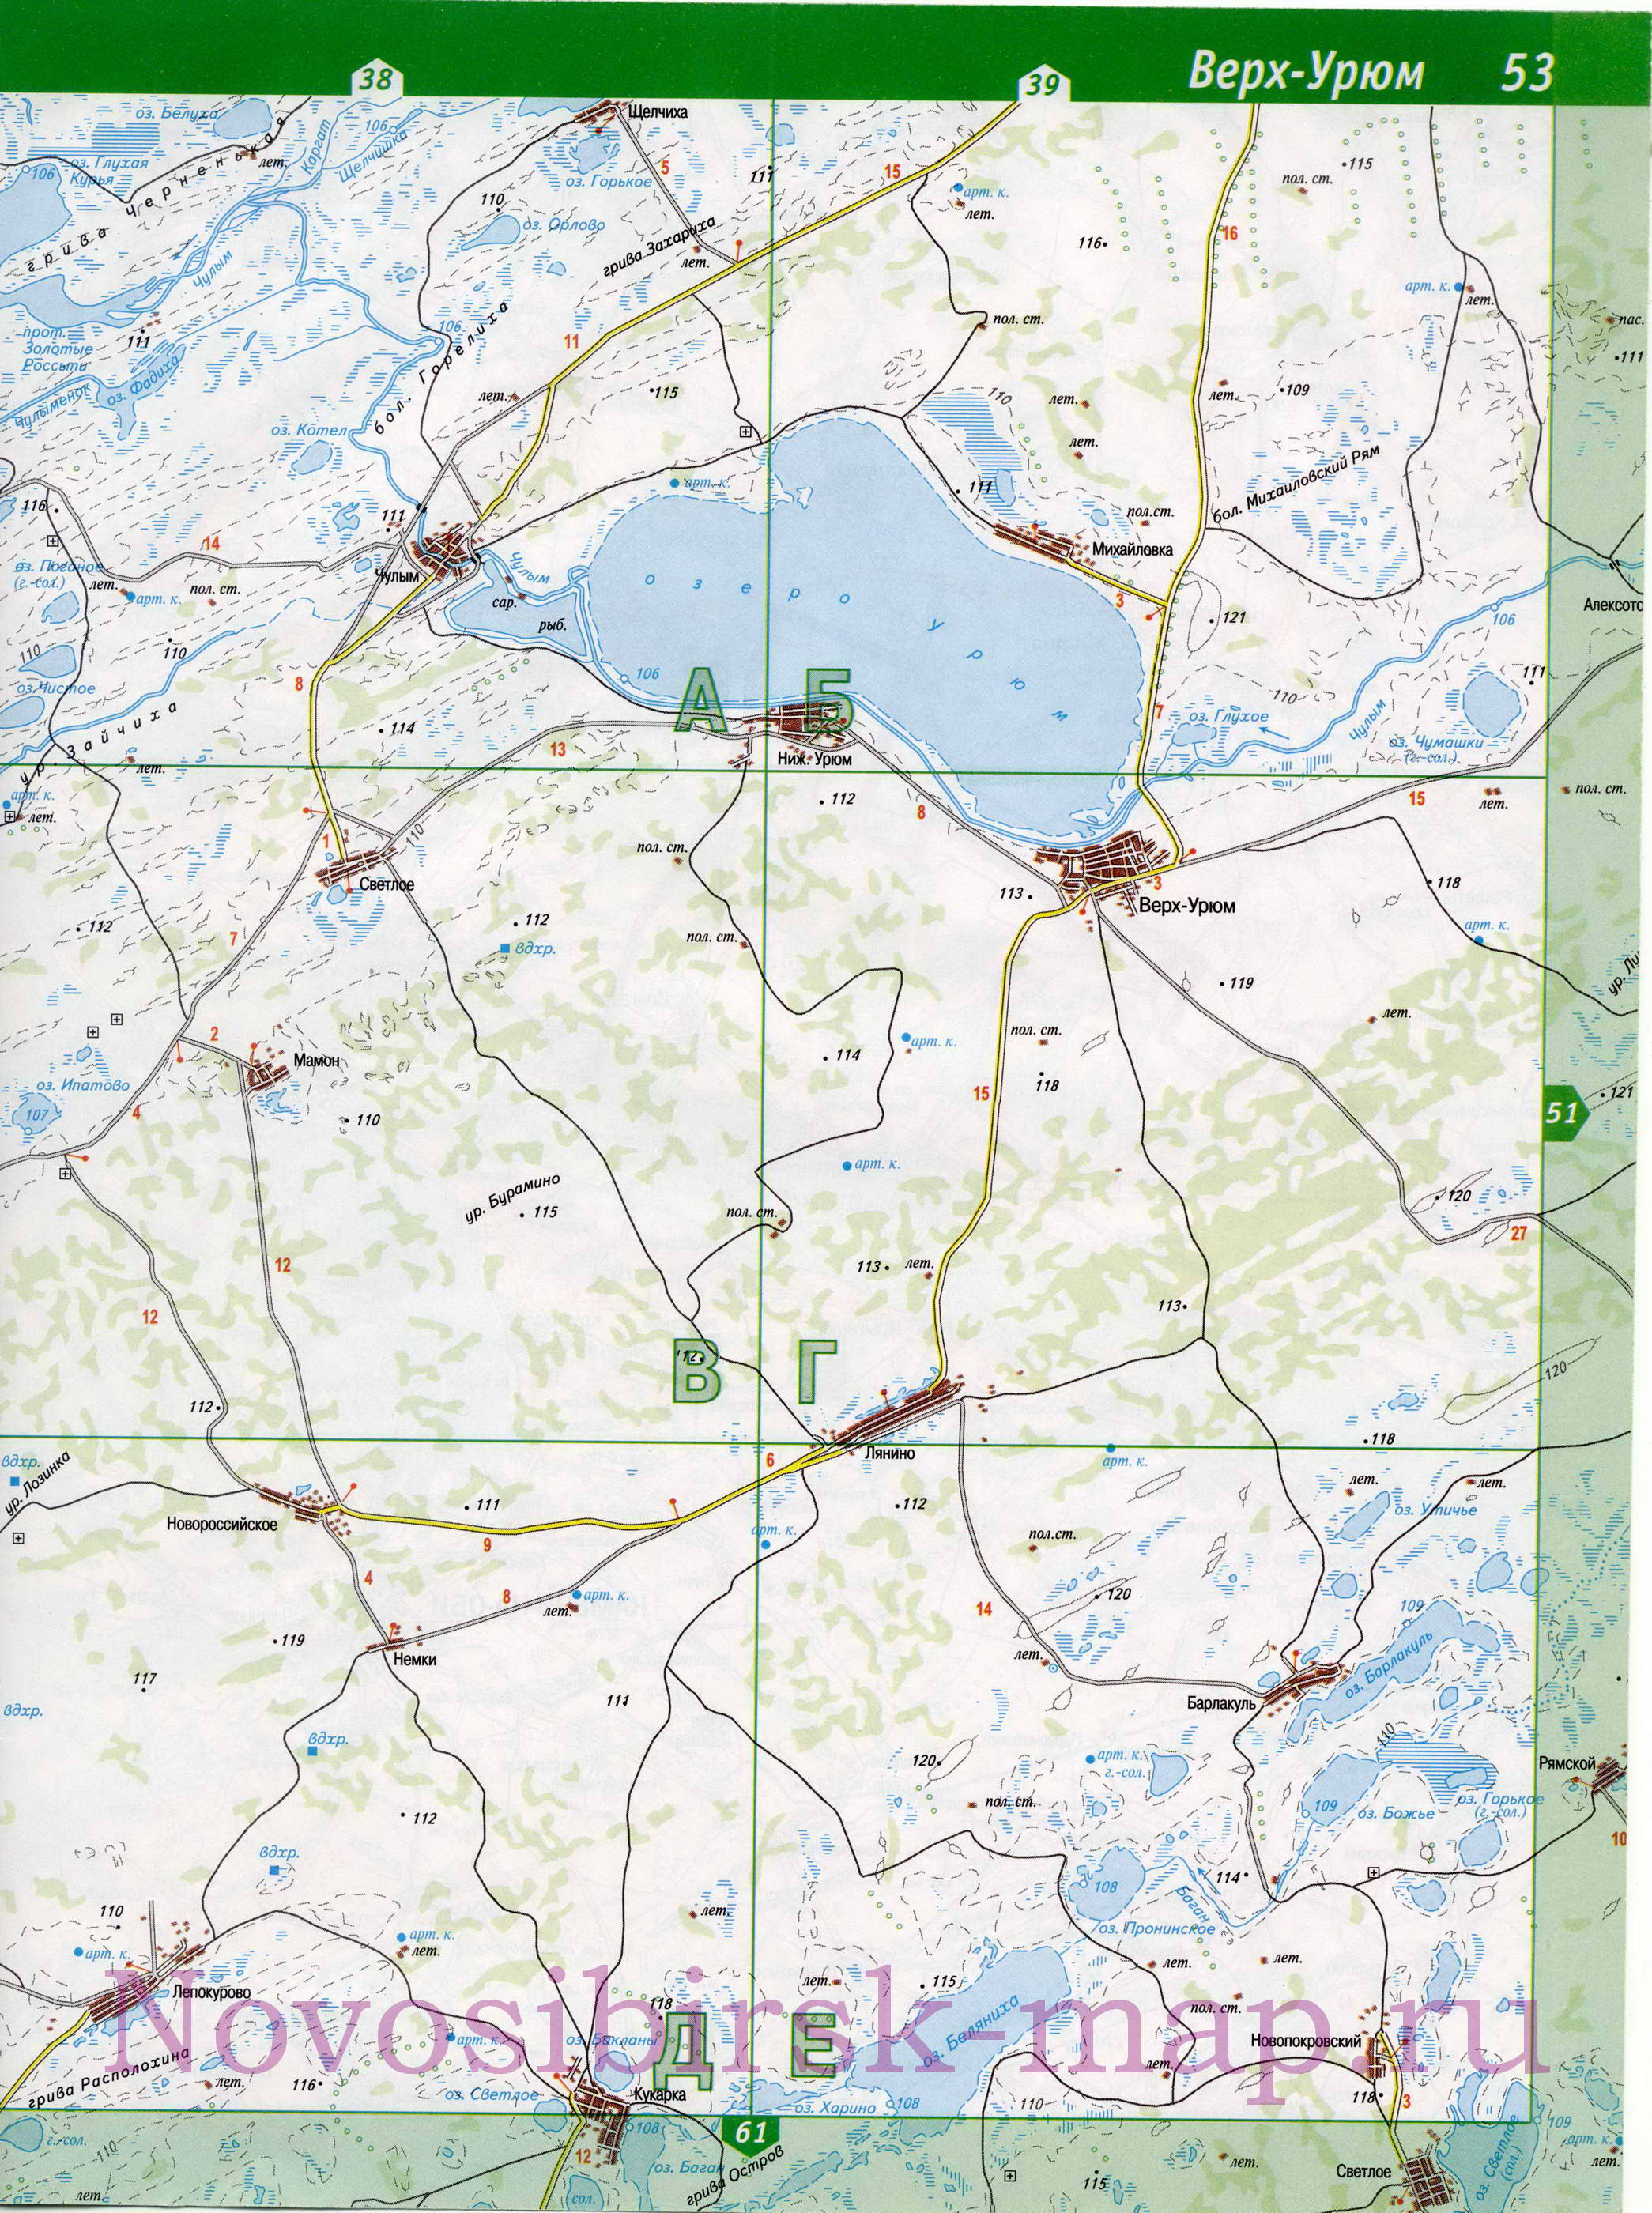 Карта Здвинского района Новосибирской области. Карта автомобильных дорог - Здвинский район, B1 - 